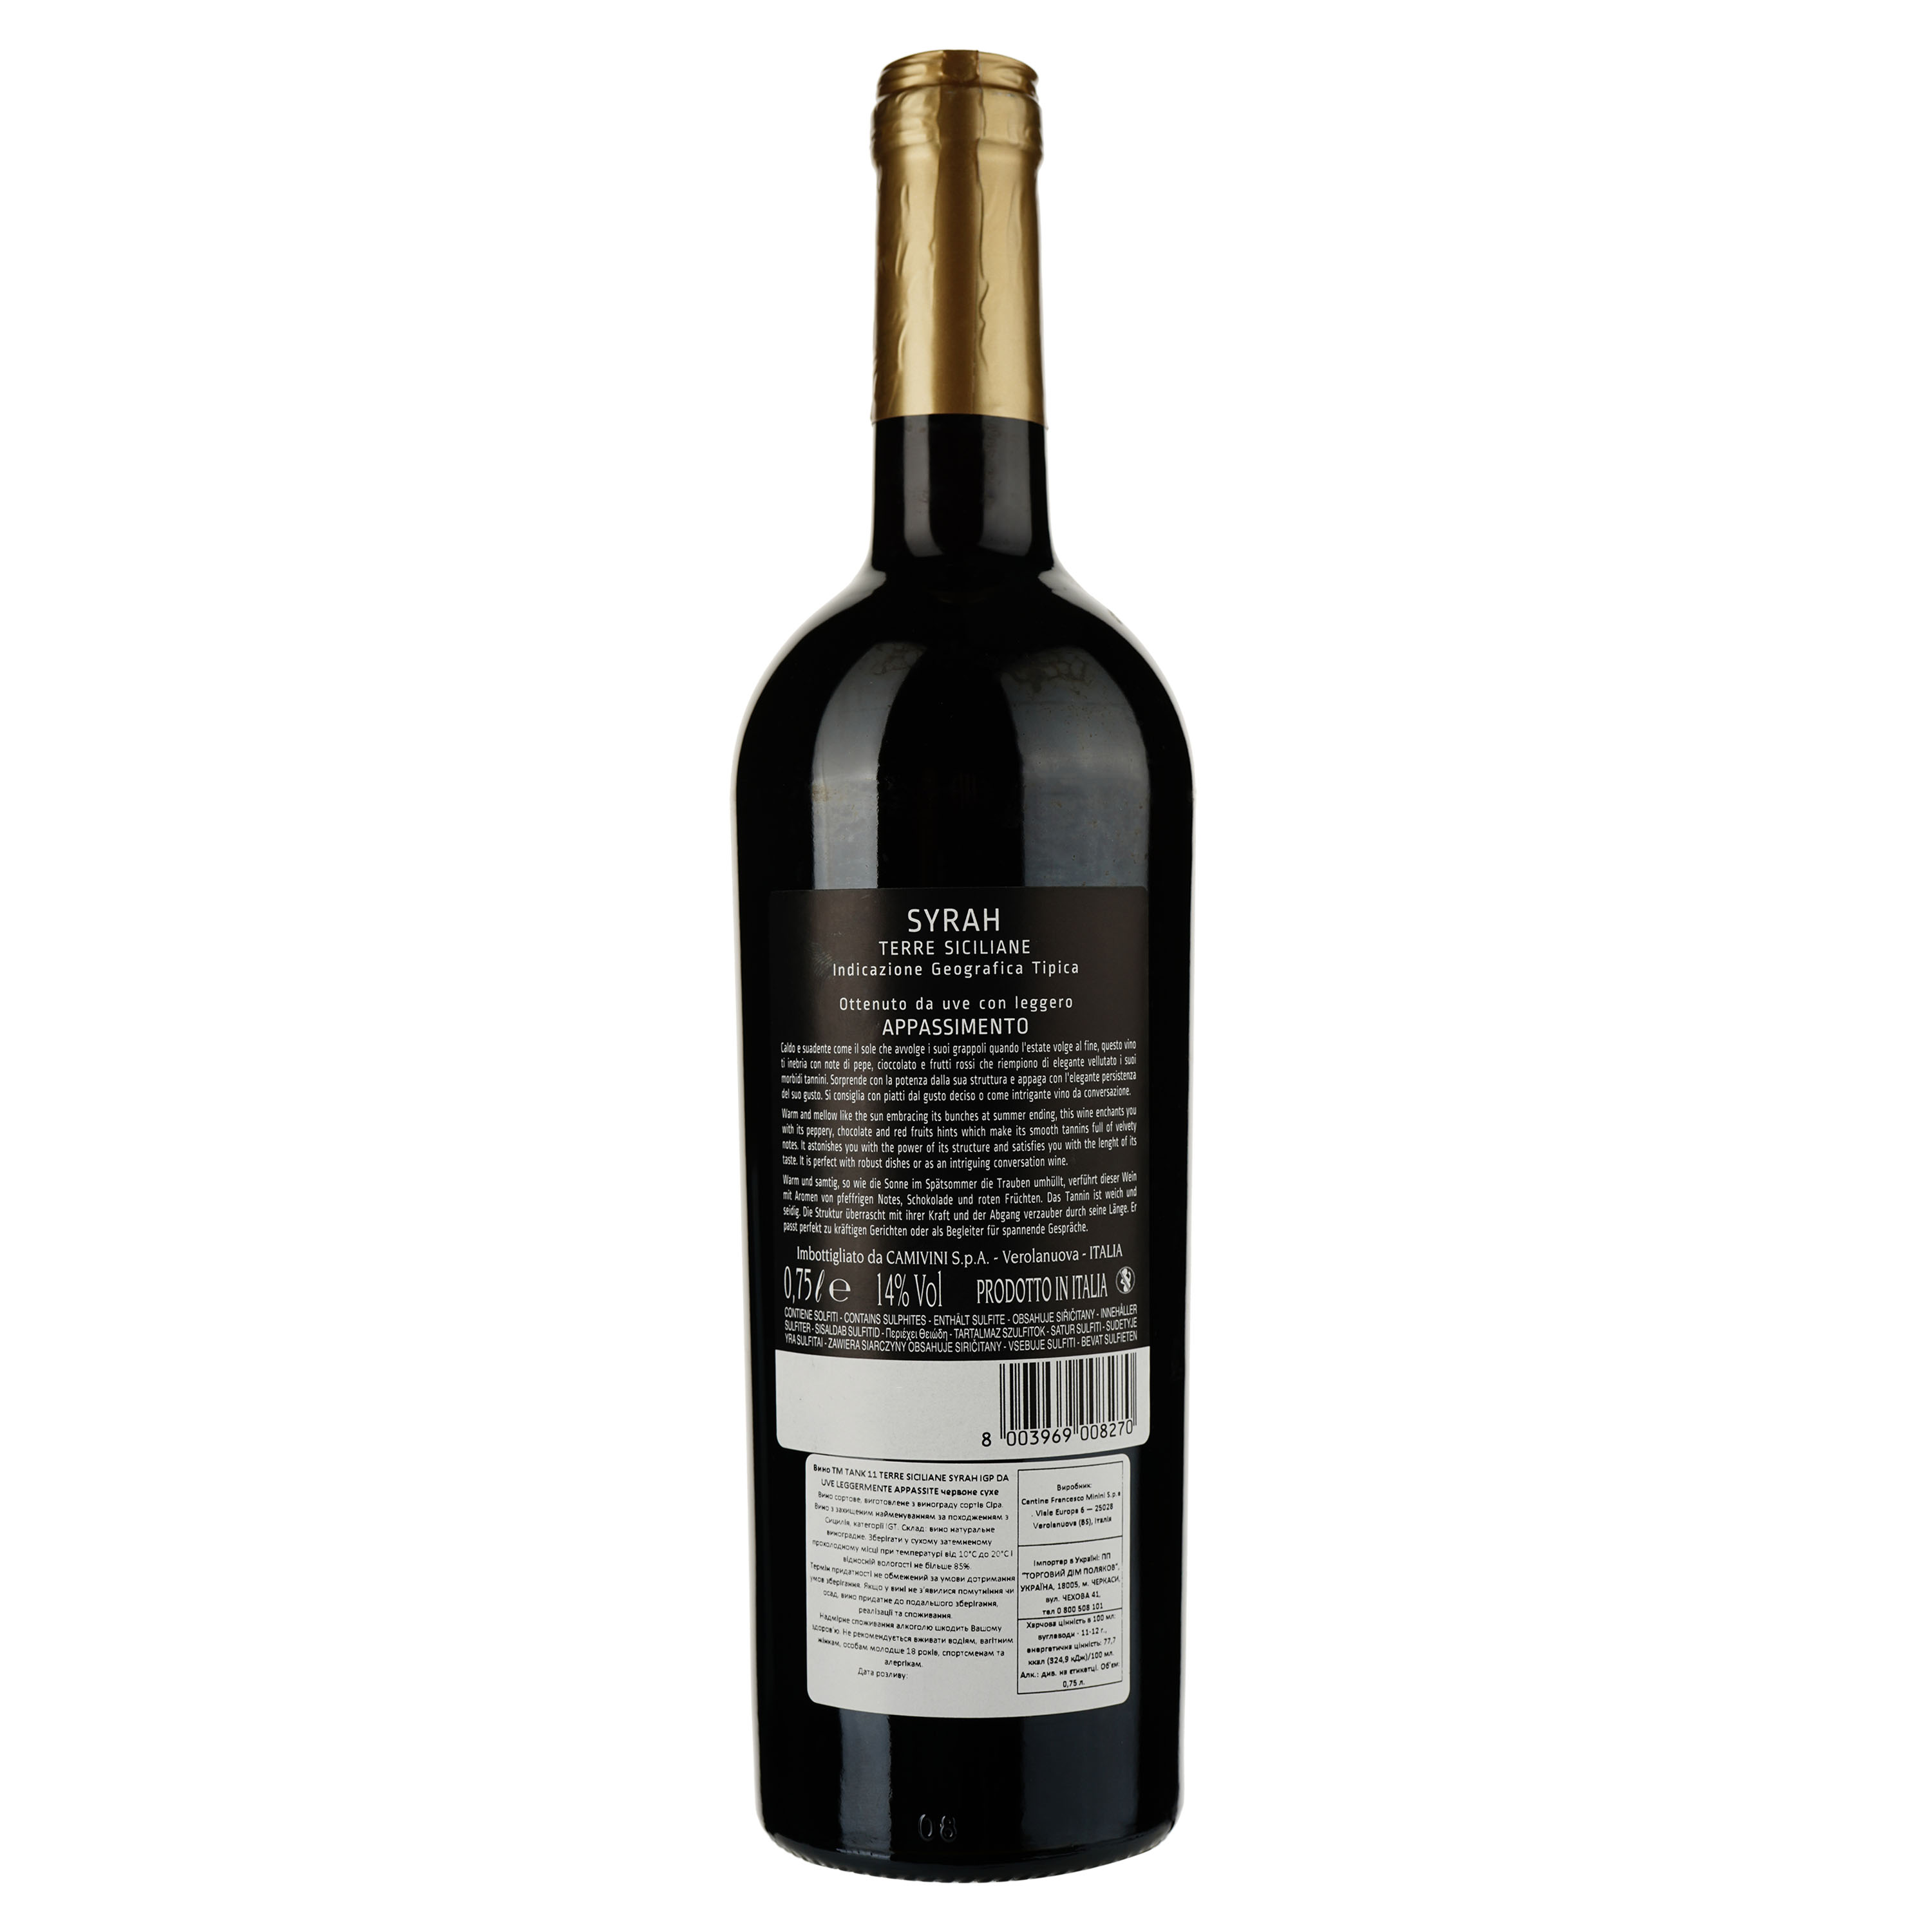 Вино Tank 11 Syrah Appassimento Terre Siciliane IGT, красное, сухое, 0,75 л - фото 2